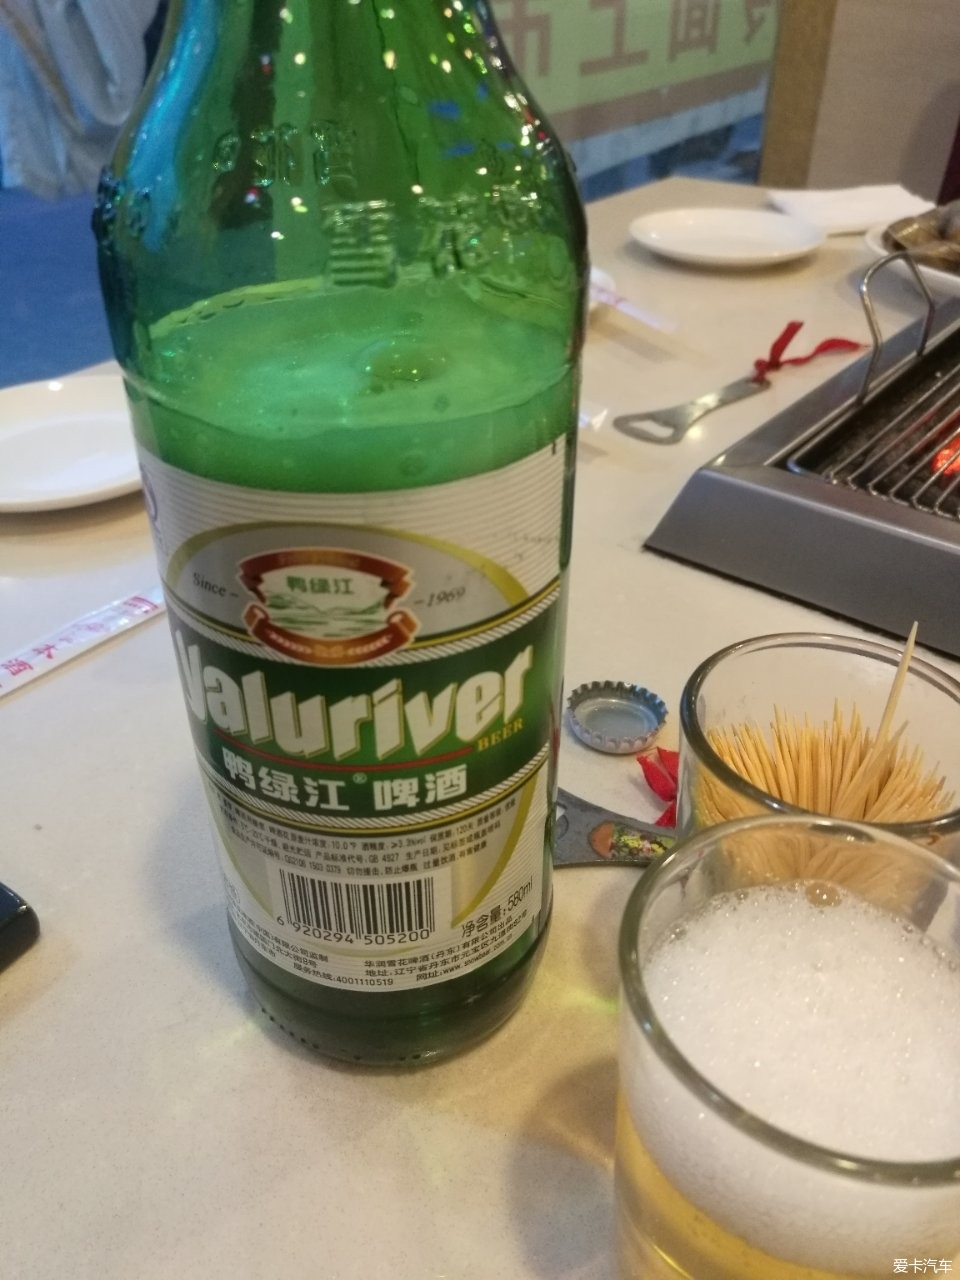 本地鸭绿江啤酒,俗称:闷倒驴,劲大